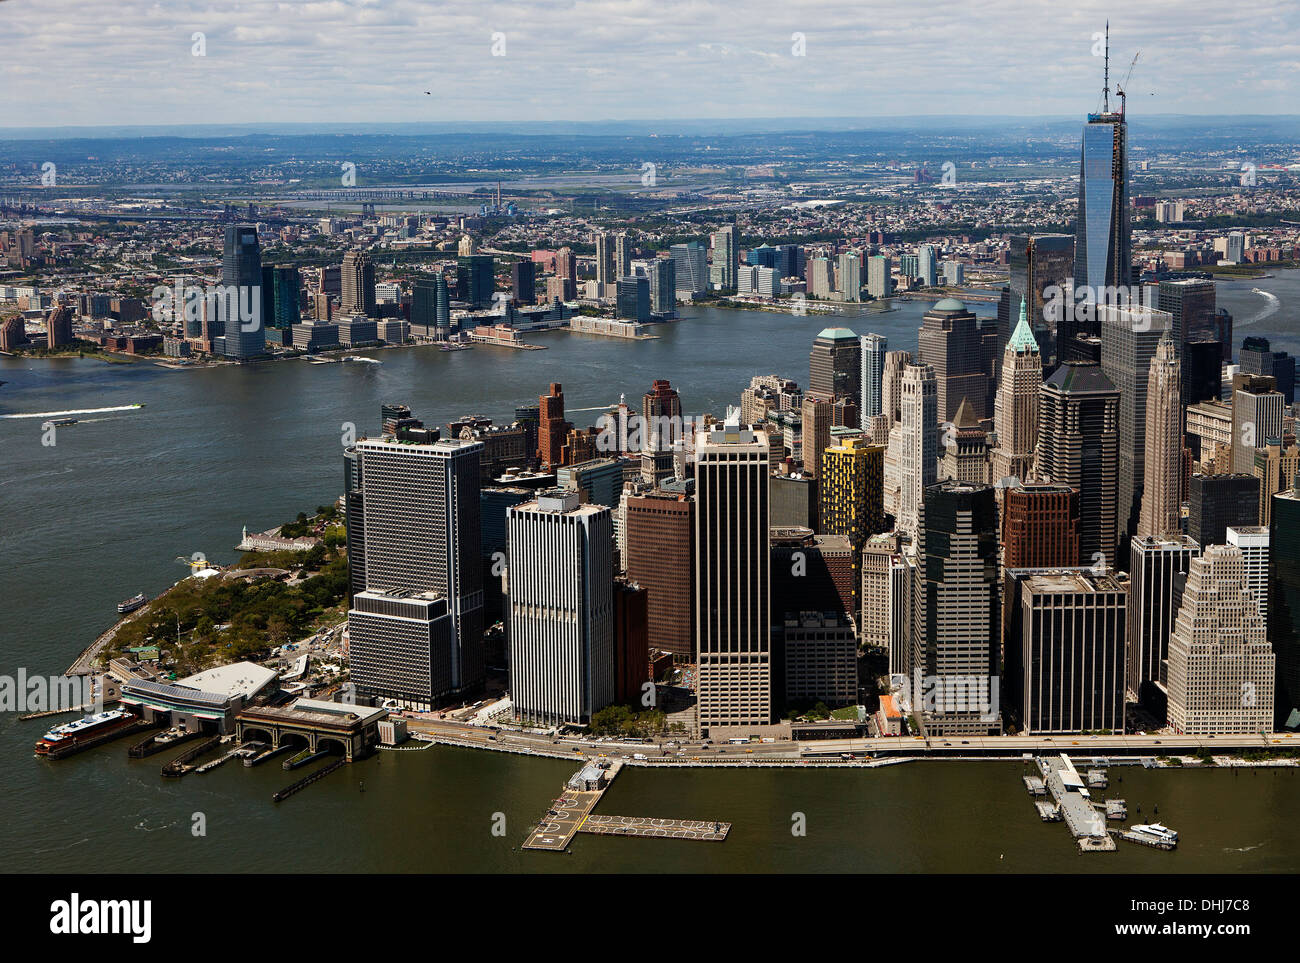 Photographie aérienne du lower Manhattan, au bord de l'East River, South Ferry Terminal Whitehall, New York City Banque D'Images